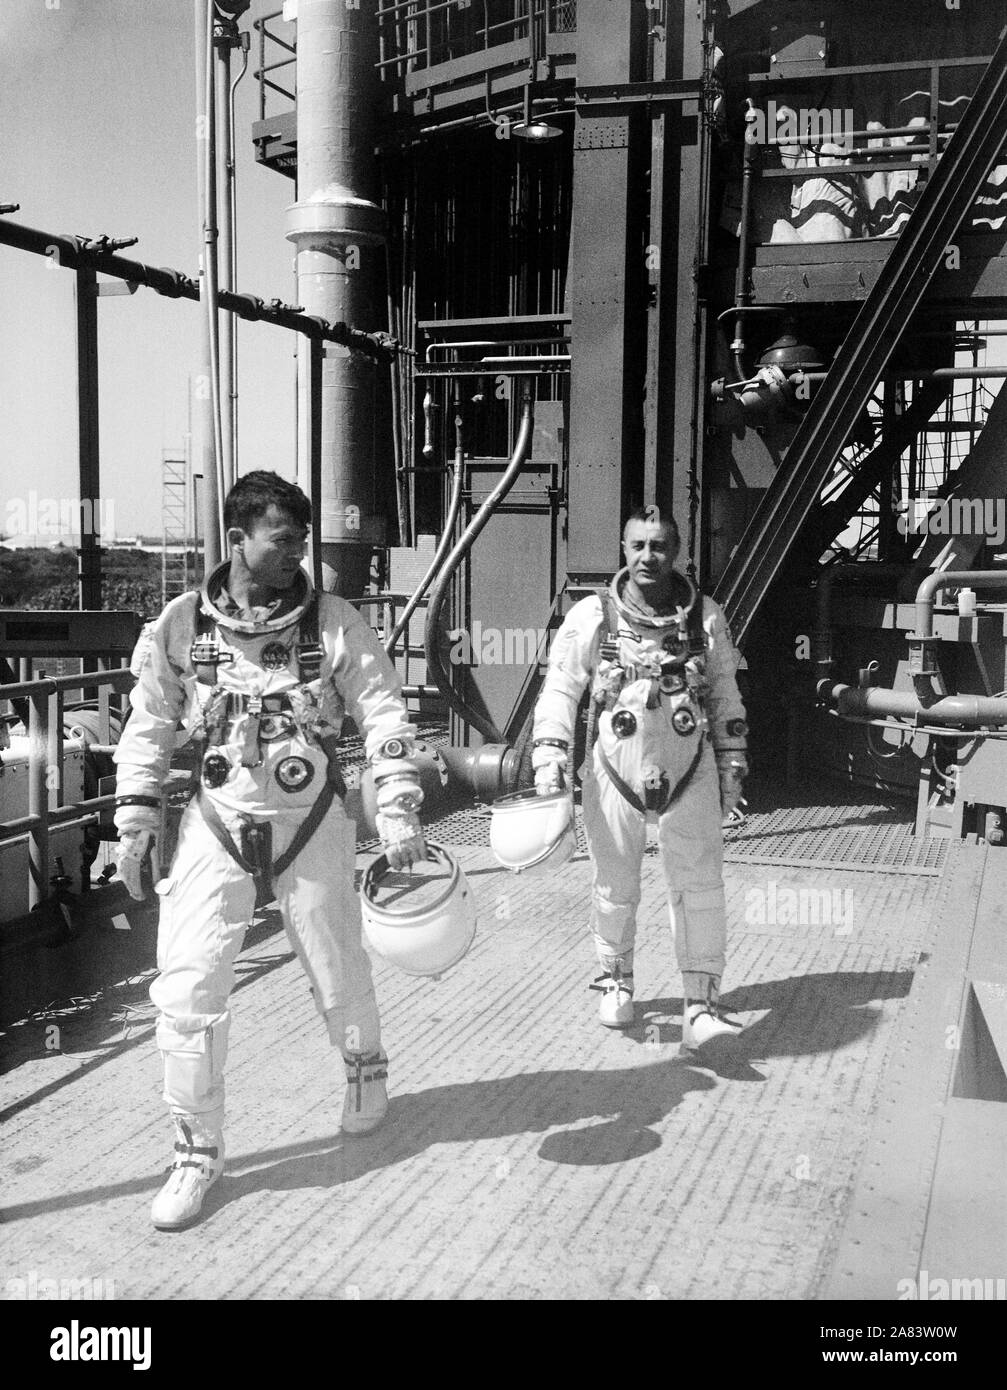 Gli astronauti John W. Young (sinistra), pilota, e Virgil I. Grissom, il comando pilota, per l'Gemini-Titan 3 volo, sono mostrati lasciando il launch pad dopo le simulazioni in Gemini-3 navicelle spaziali. Foto Stock